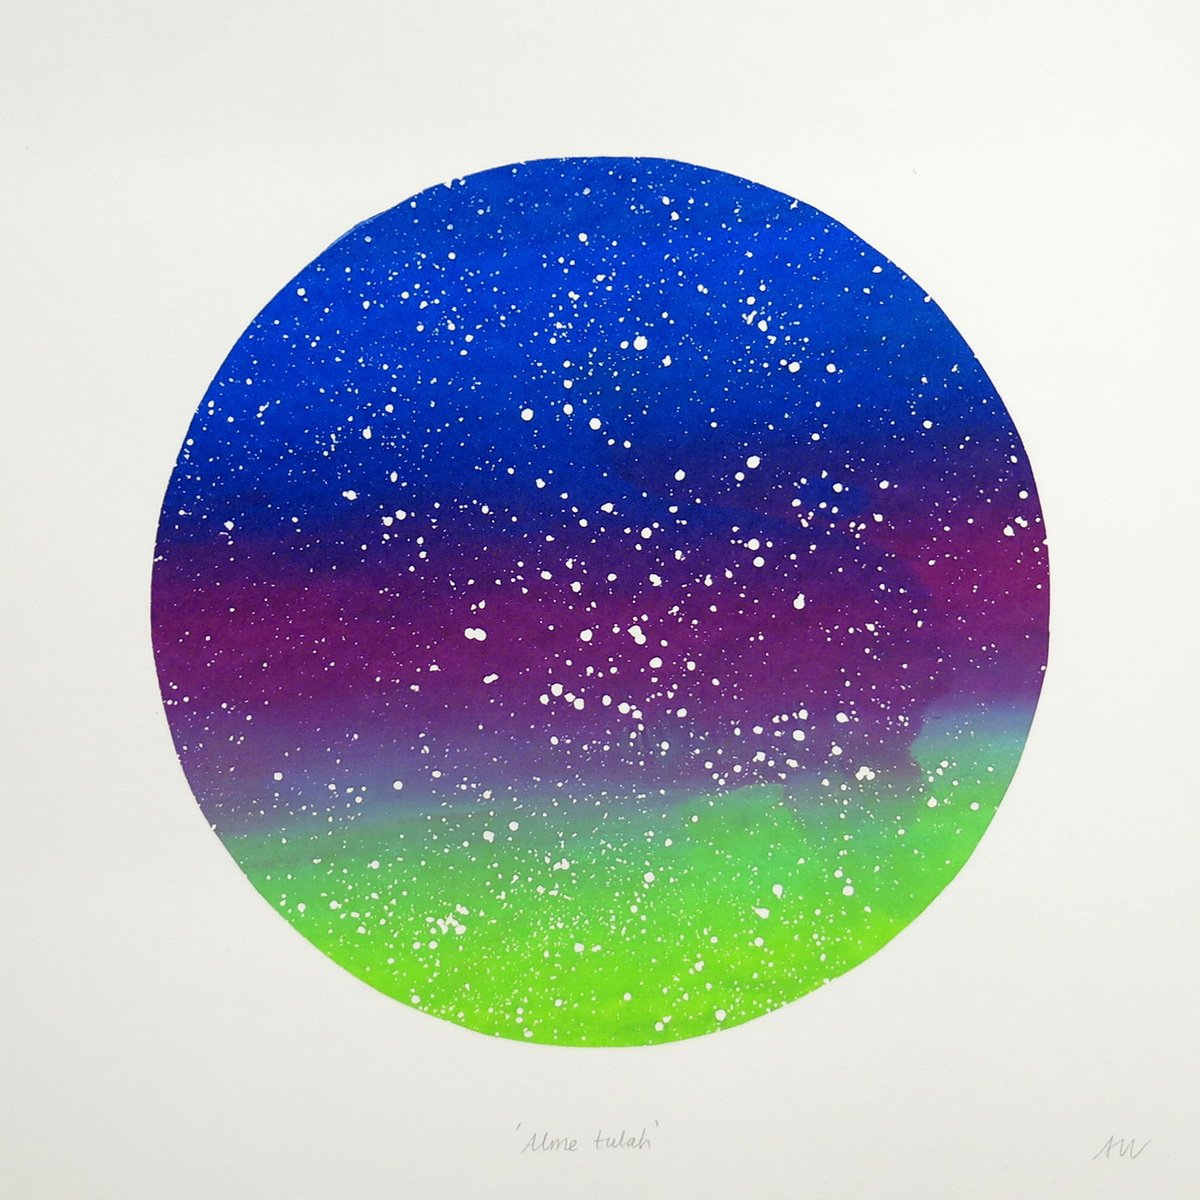 Alme tulah (Aurora Borealis) by Anna Walsh